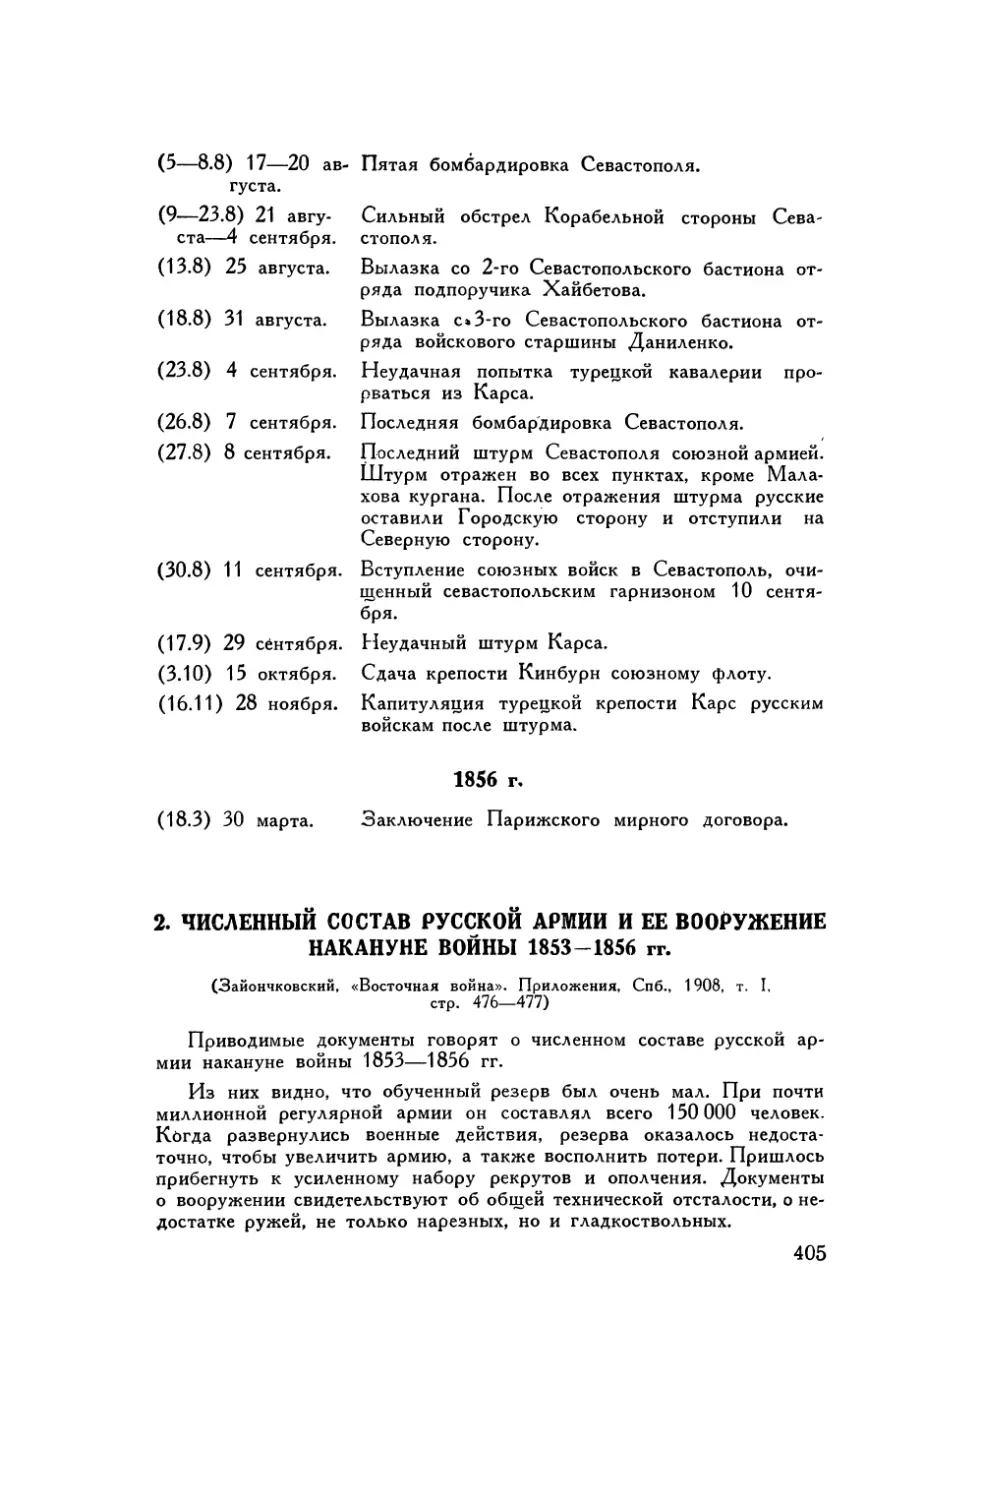 2. Численный состав русской армии и ее вооружение накануне войны 1853–1856 гг.